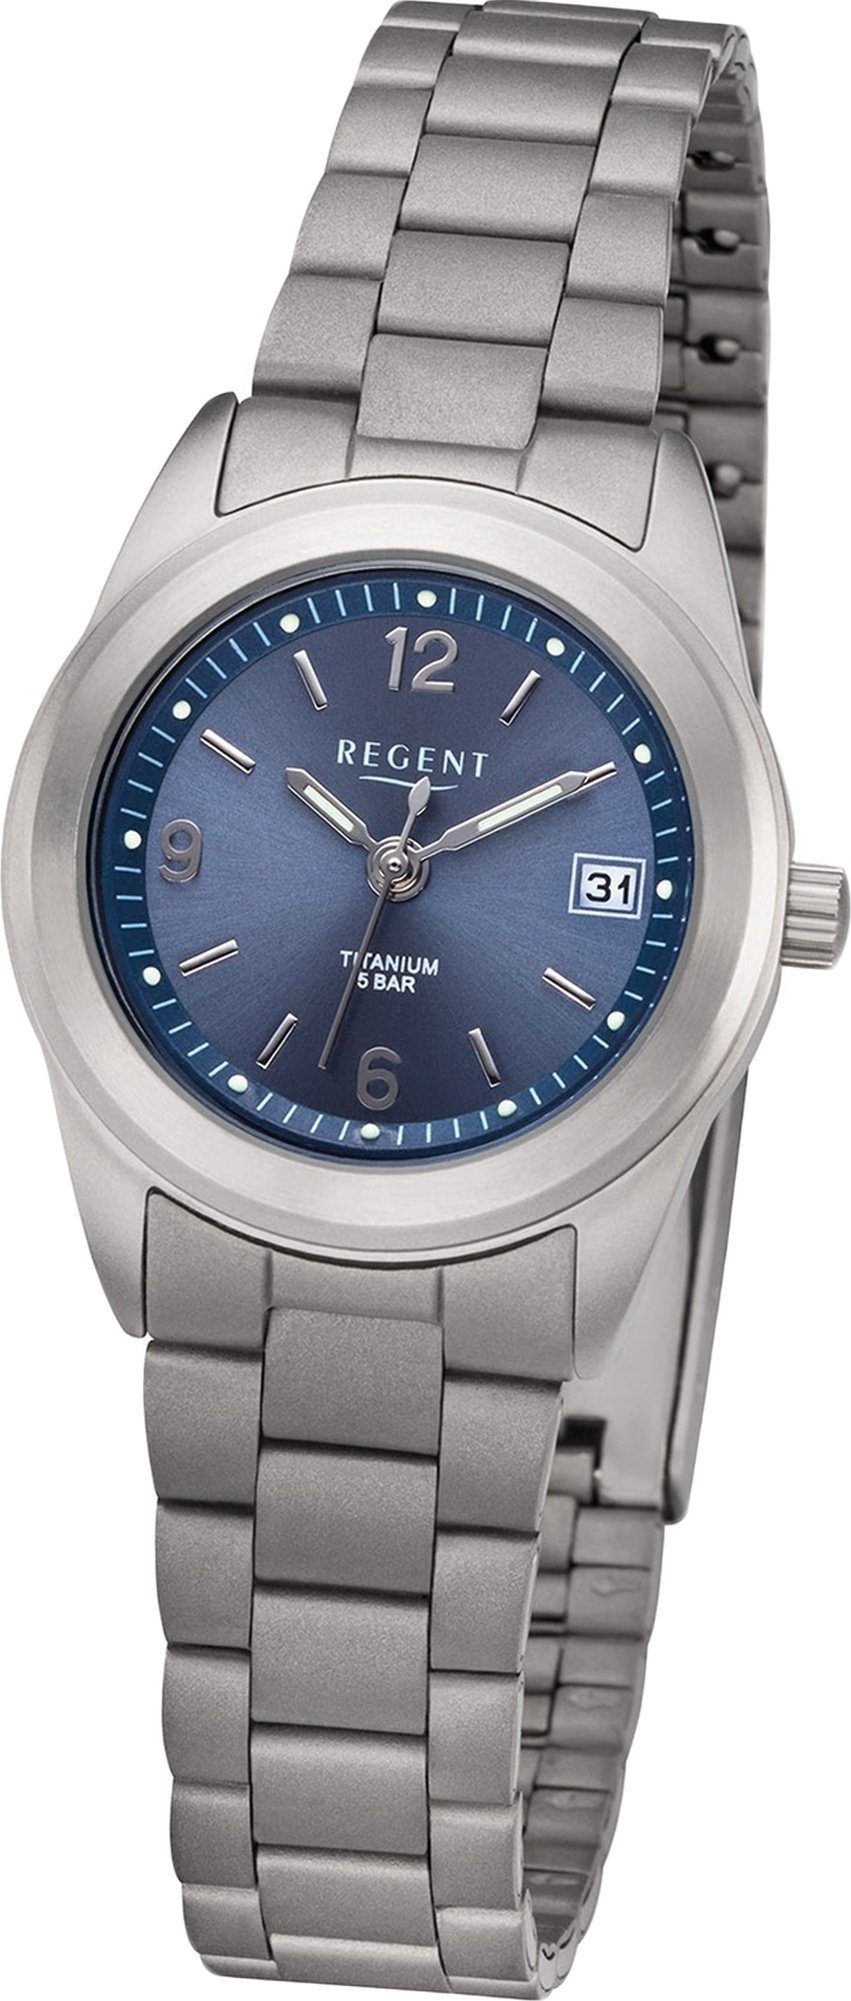 Regent Quarzuhr Regent Metall Damen Uhr F-1168 Analog, Damenuhr Metallarmband silber, rundes Gehäuse, klein (ca. 26mm)